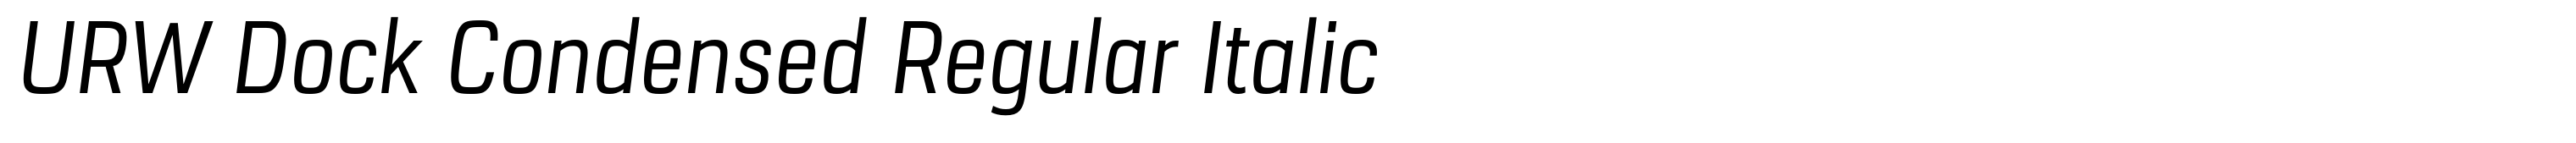 URW Dock Condensed Regular Italic